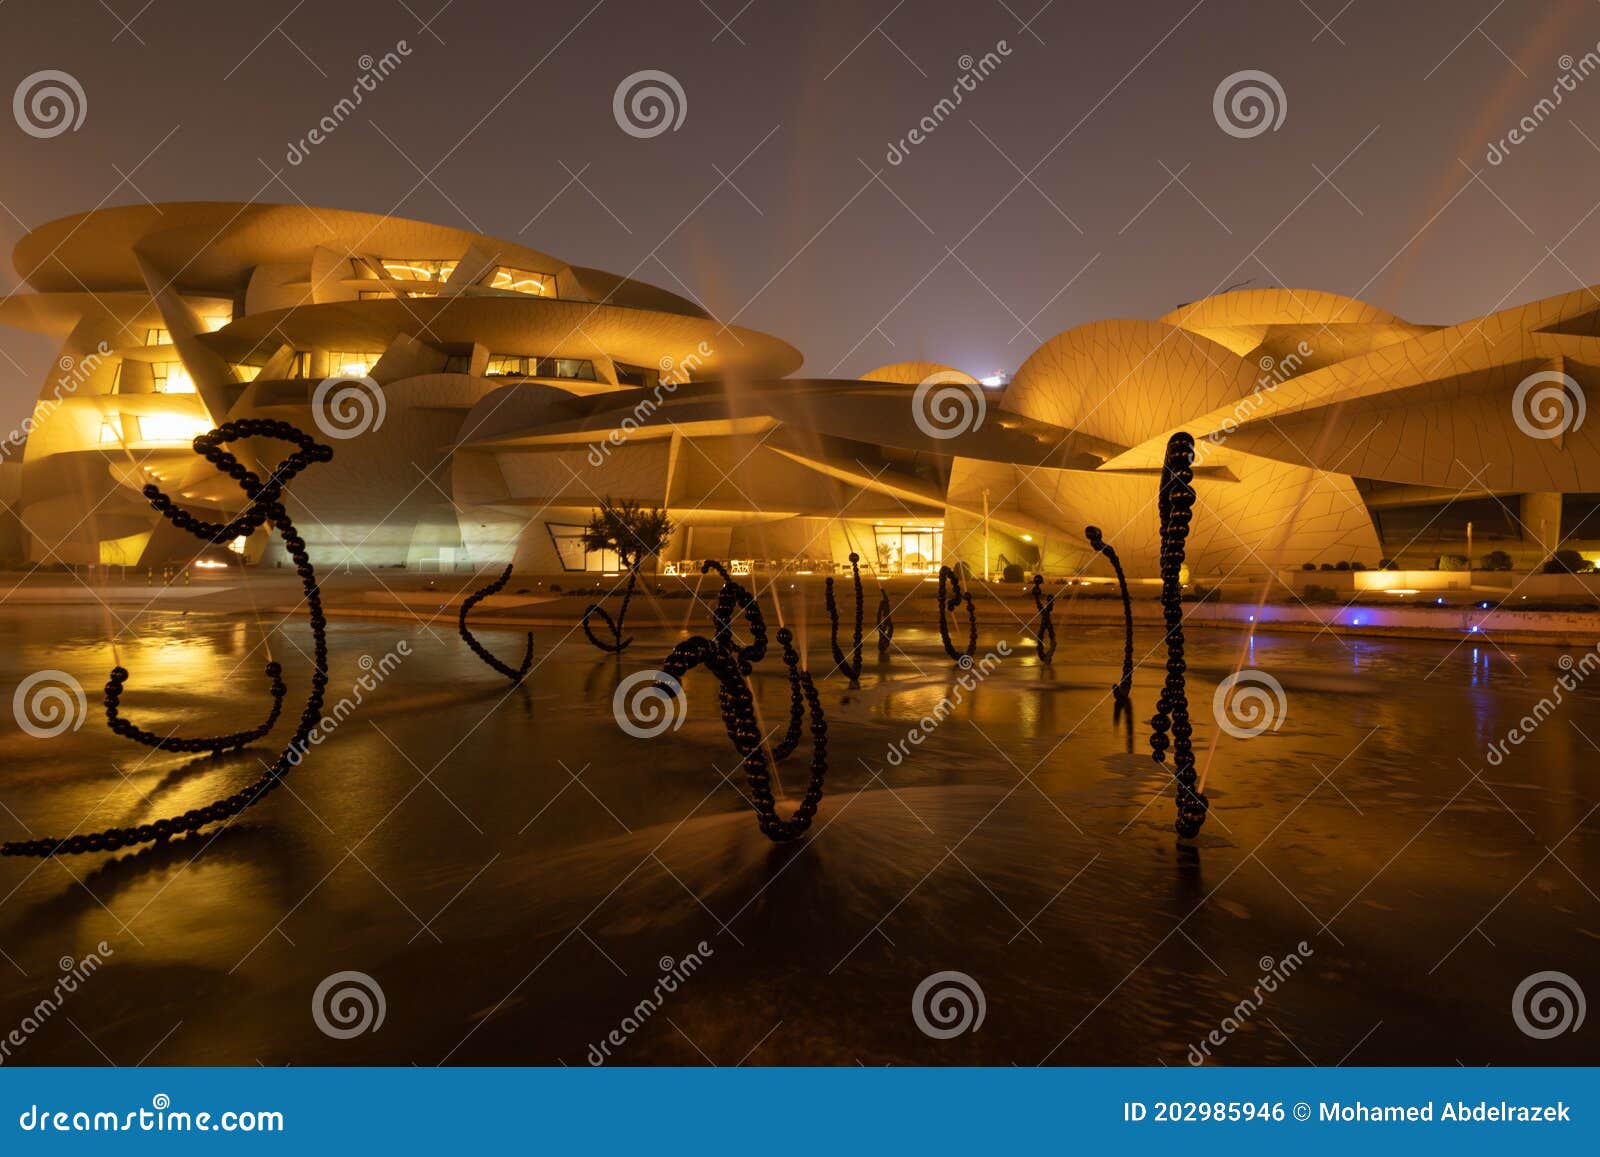 National Museum of Qatar Desert Rose in Doha Qatar Exterior Night View ...